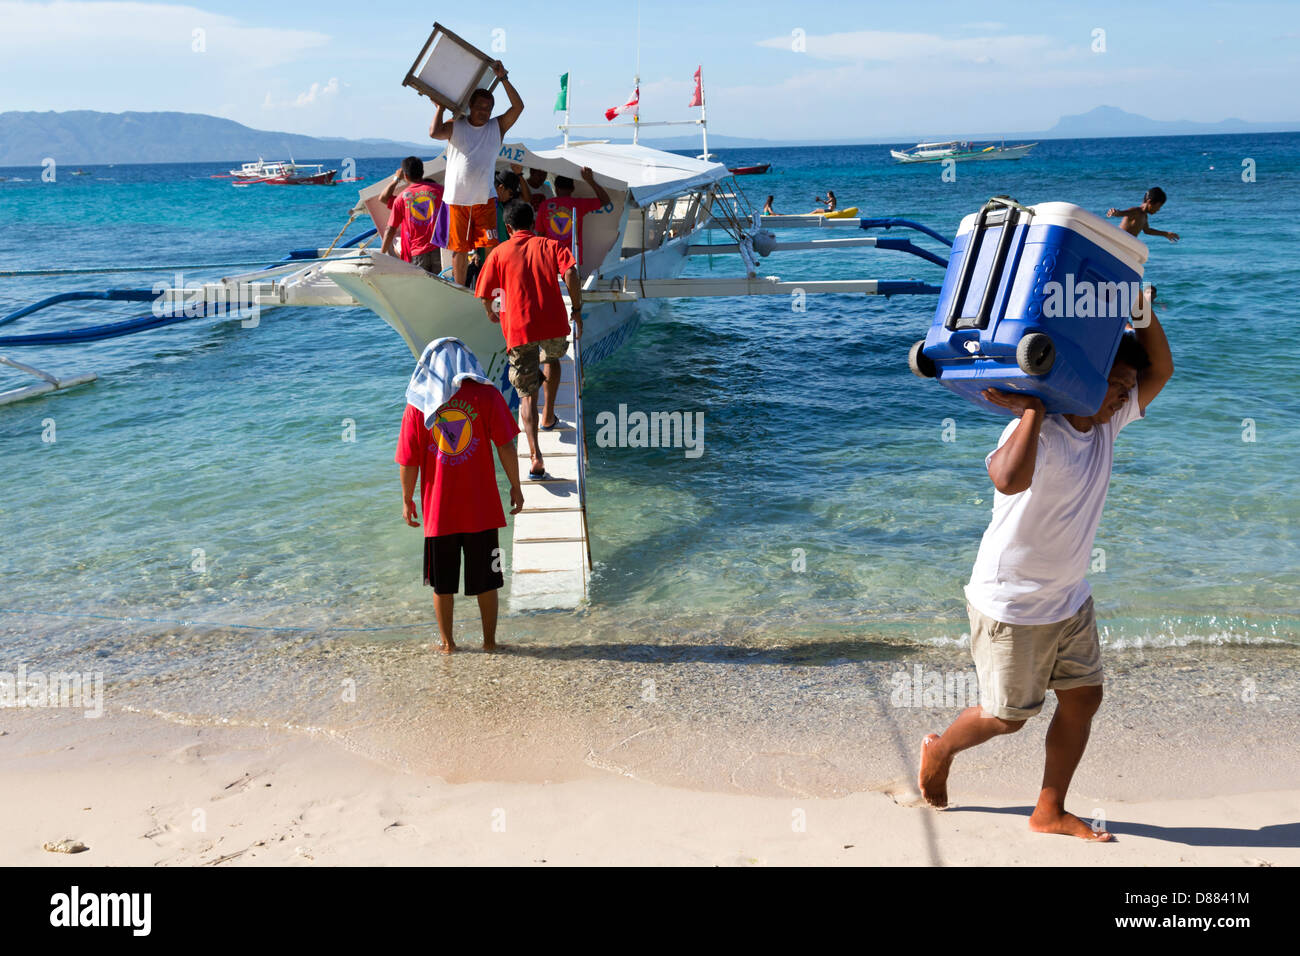 Le déchargement d'un bateau typique sur le grand La Laguna Beach sur l'île de Mindoro, Philippines Banque D'Images